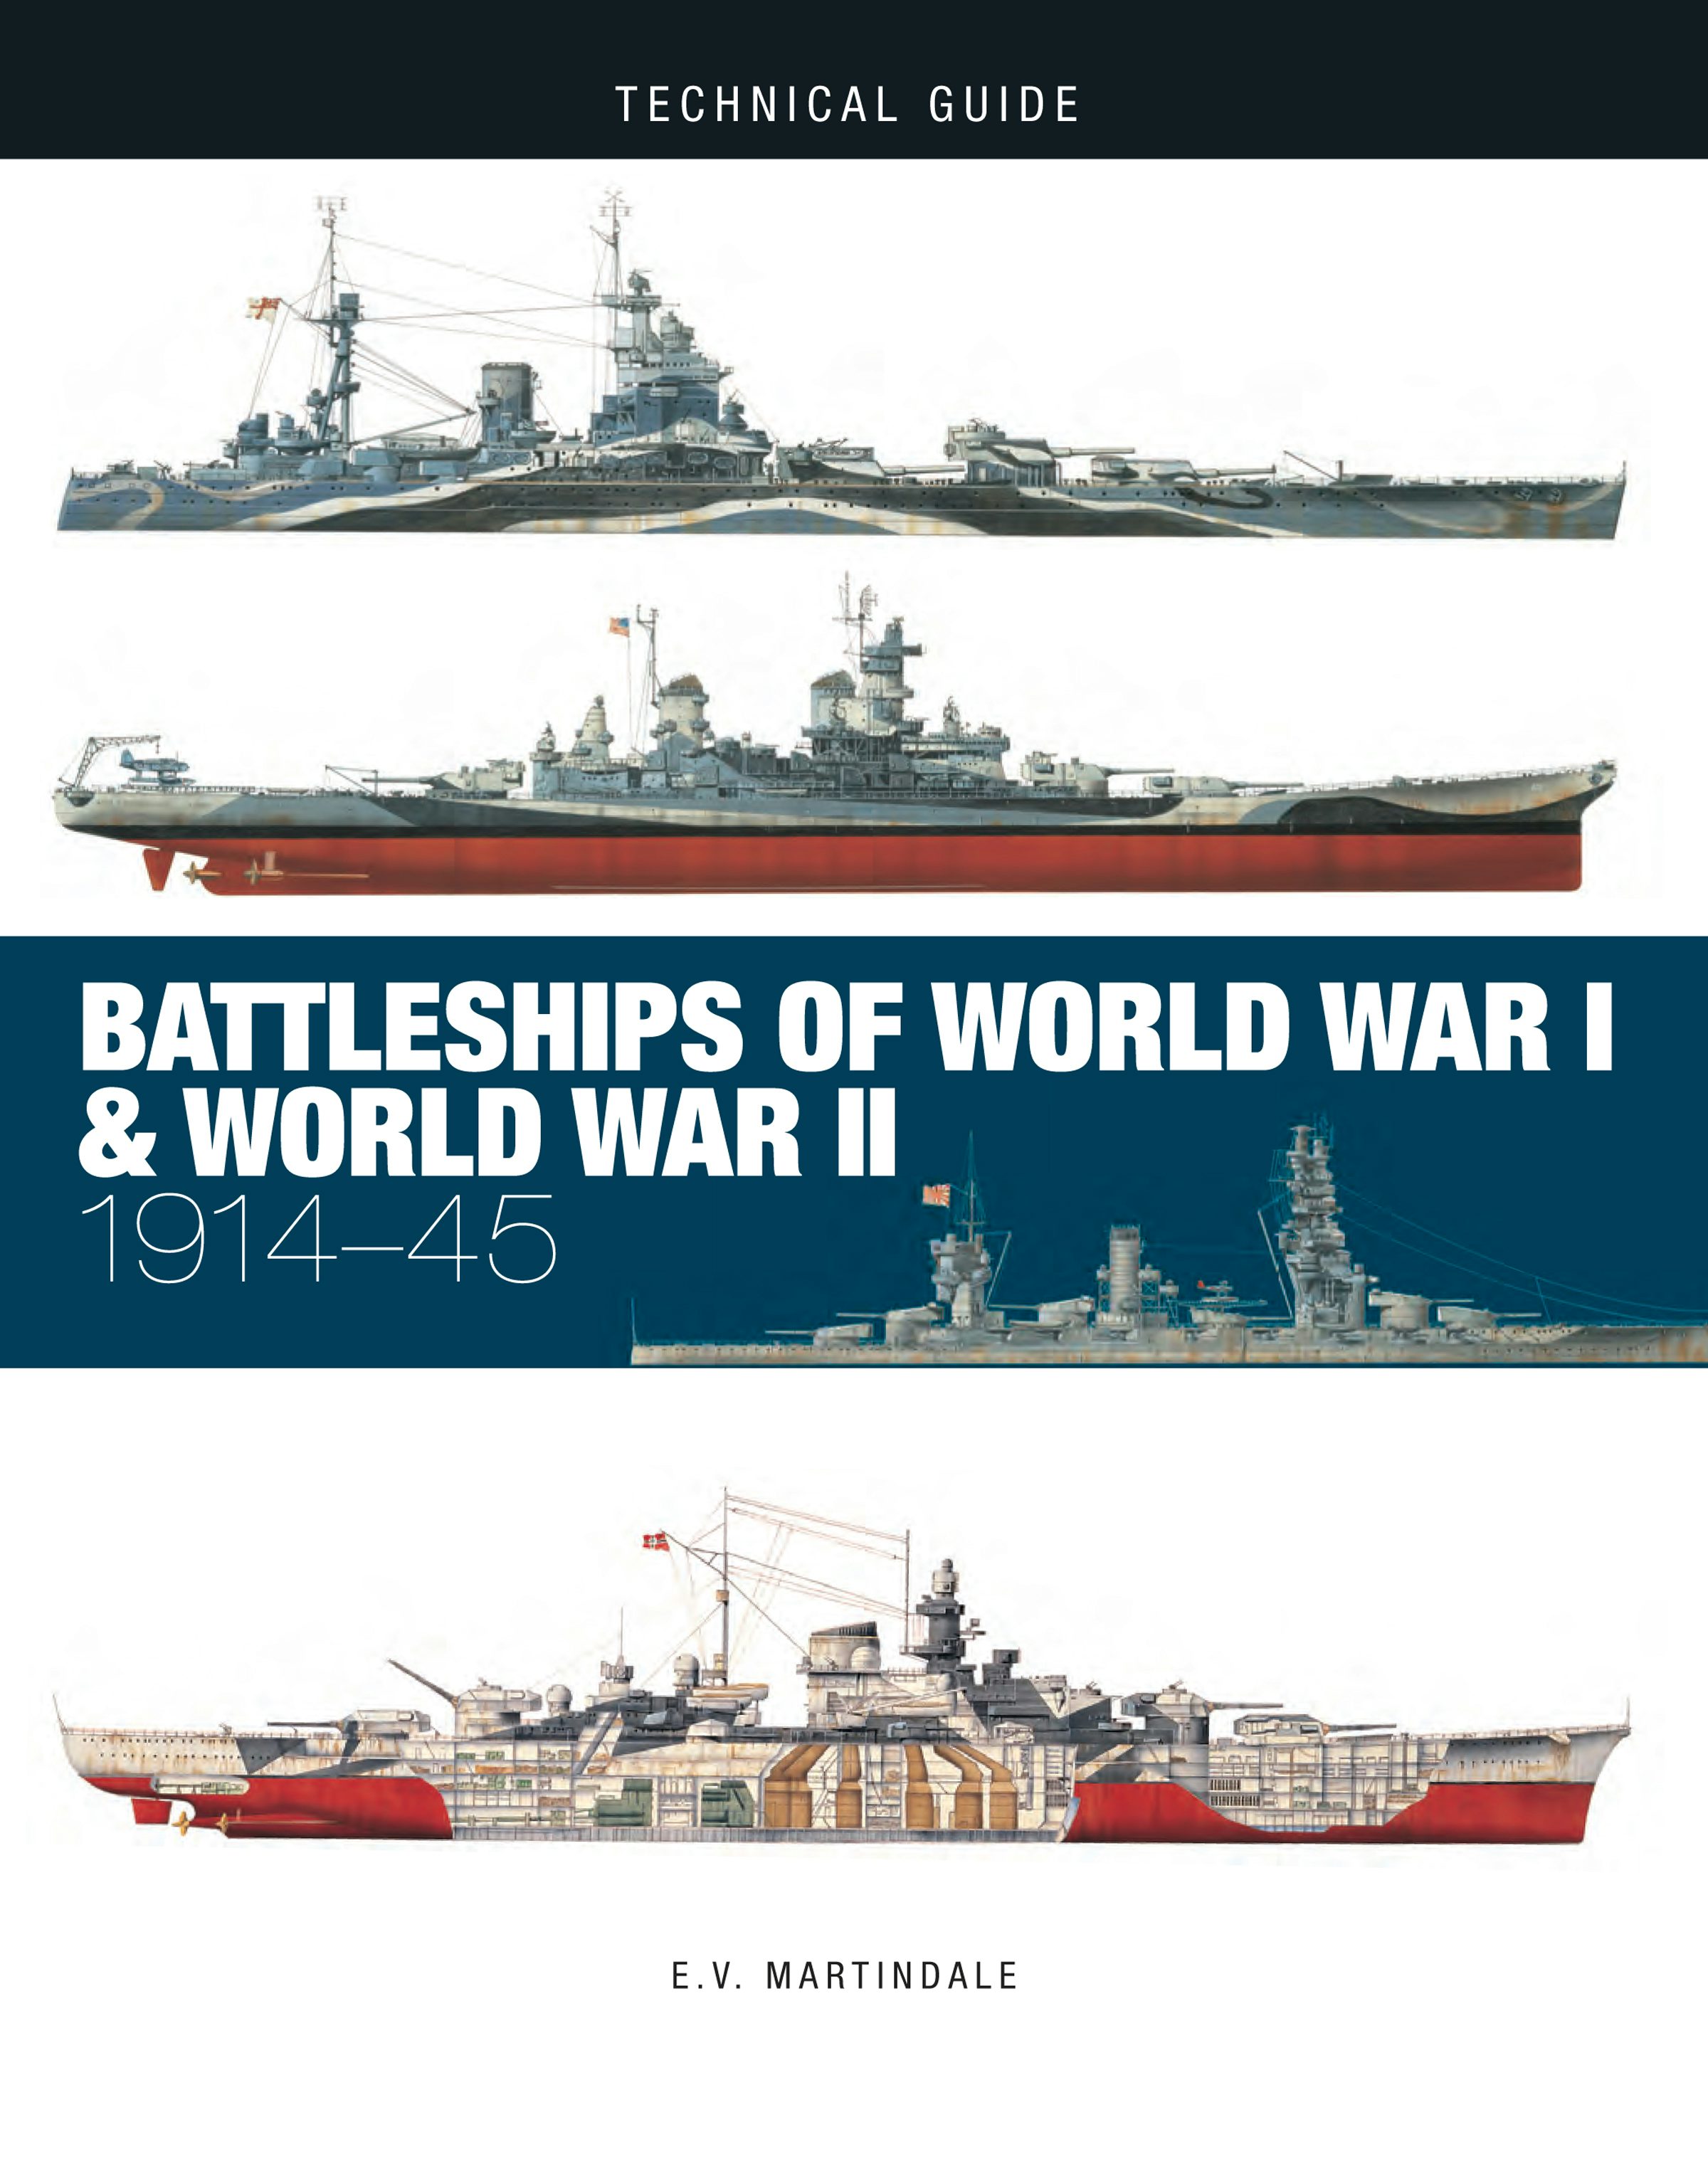 Battleships of World War I & World War II: 1914-45 by E.V. 